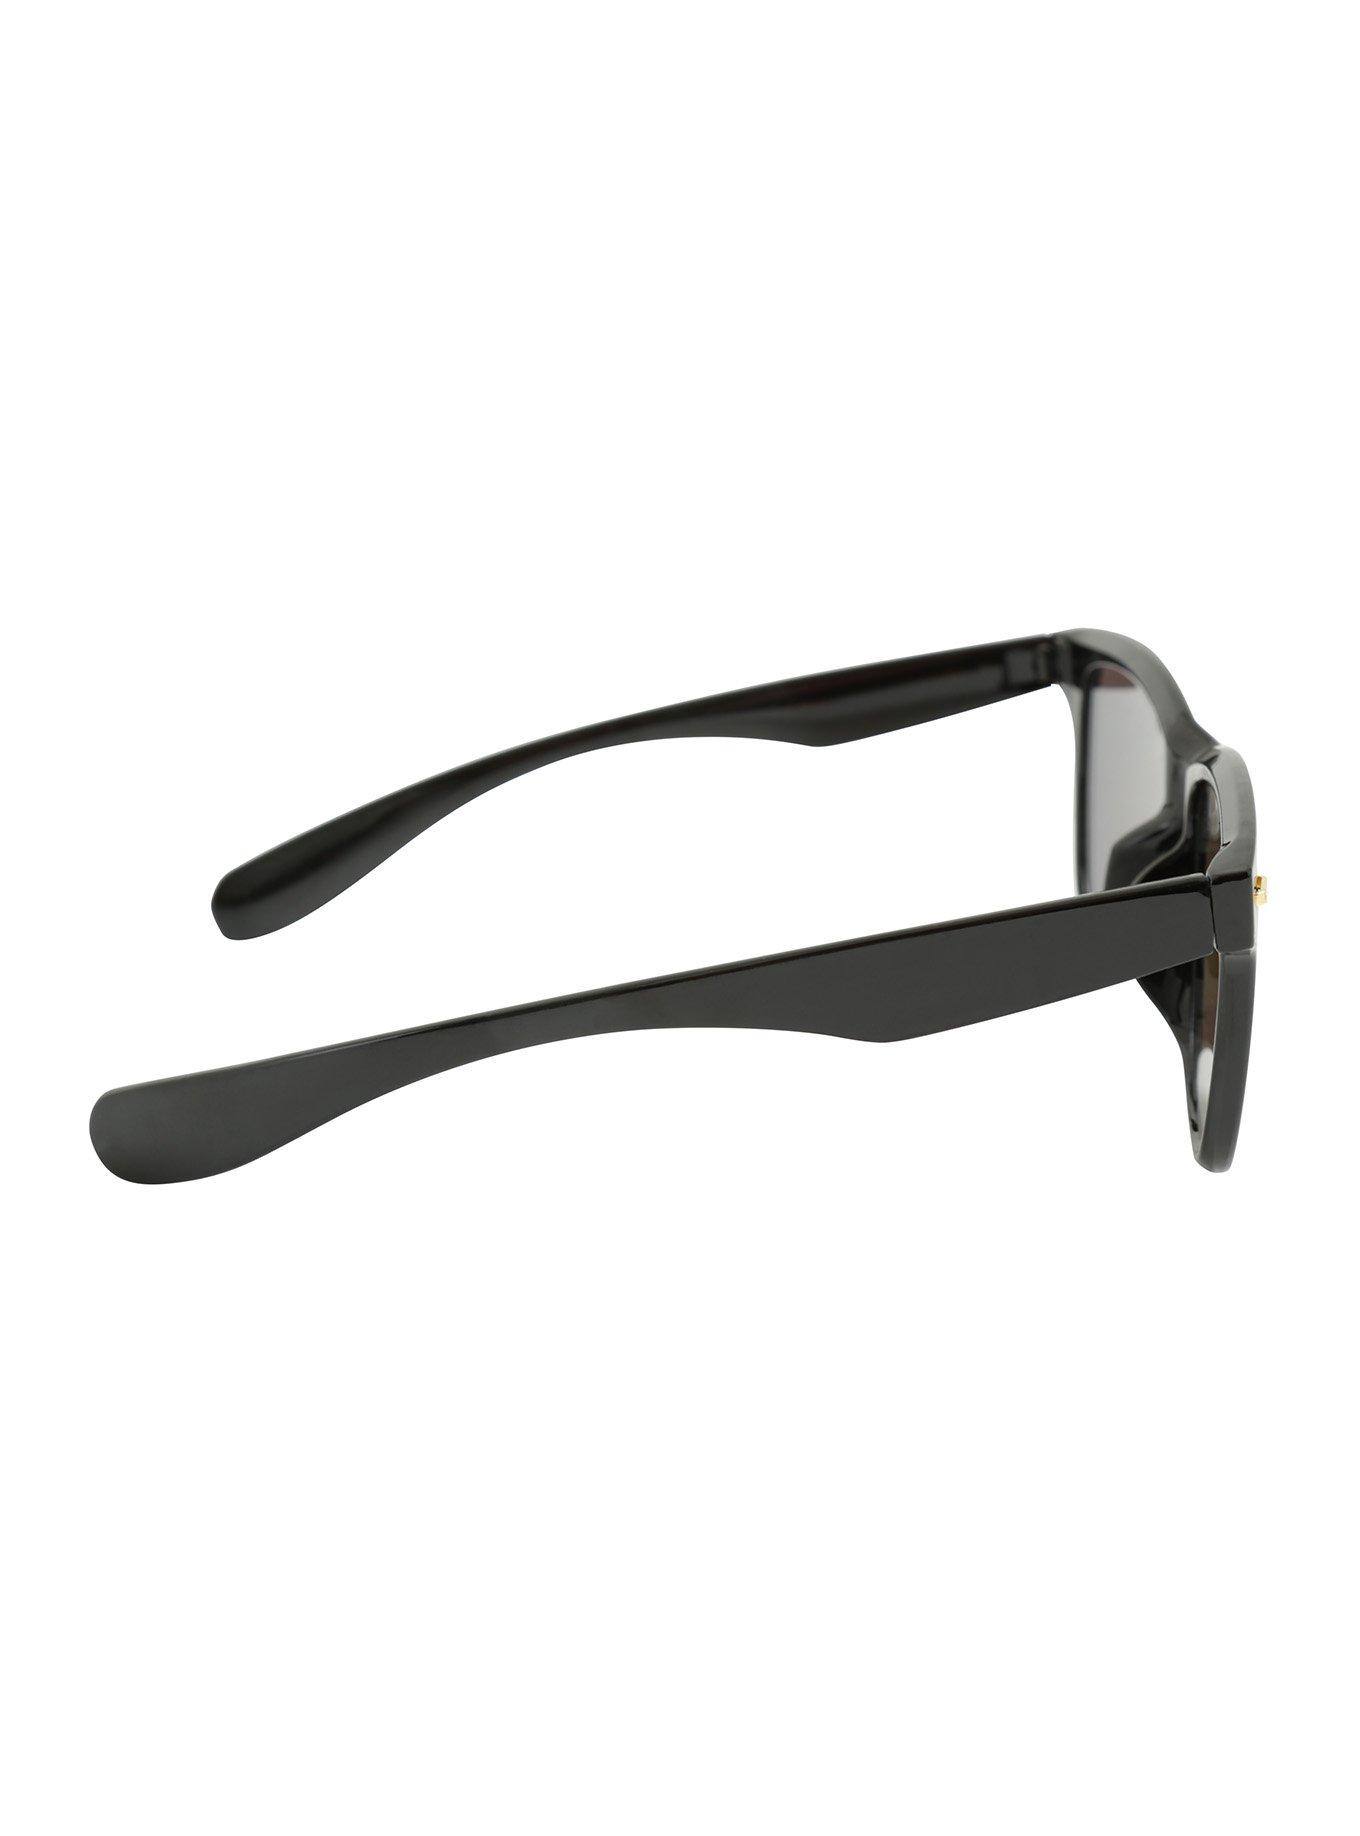 Black & Red Flat Revo Lens Sunglasses, , alternate